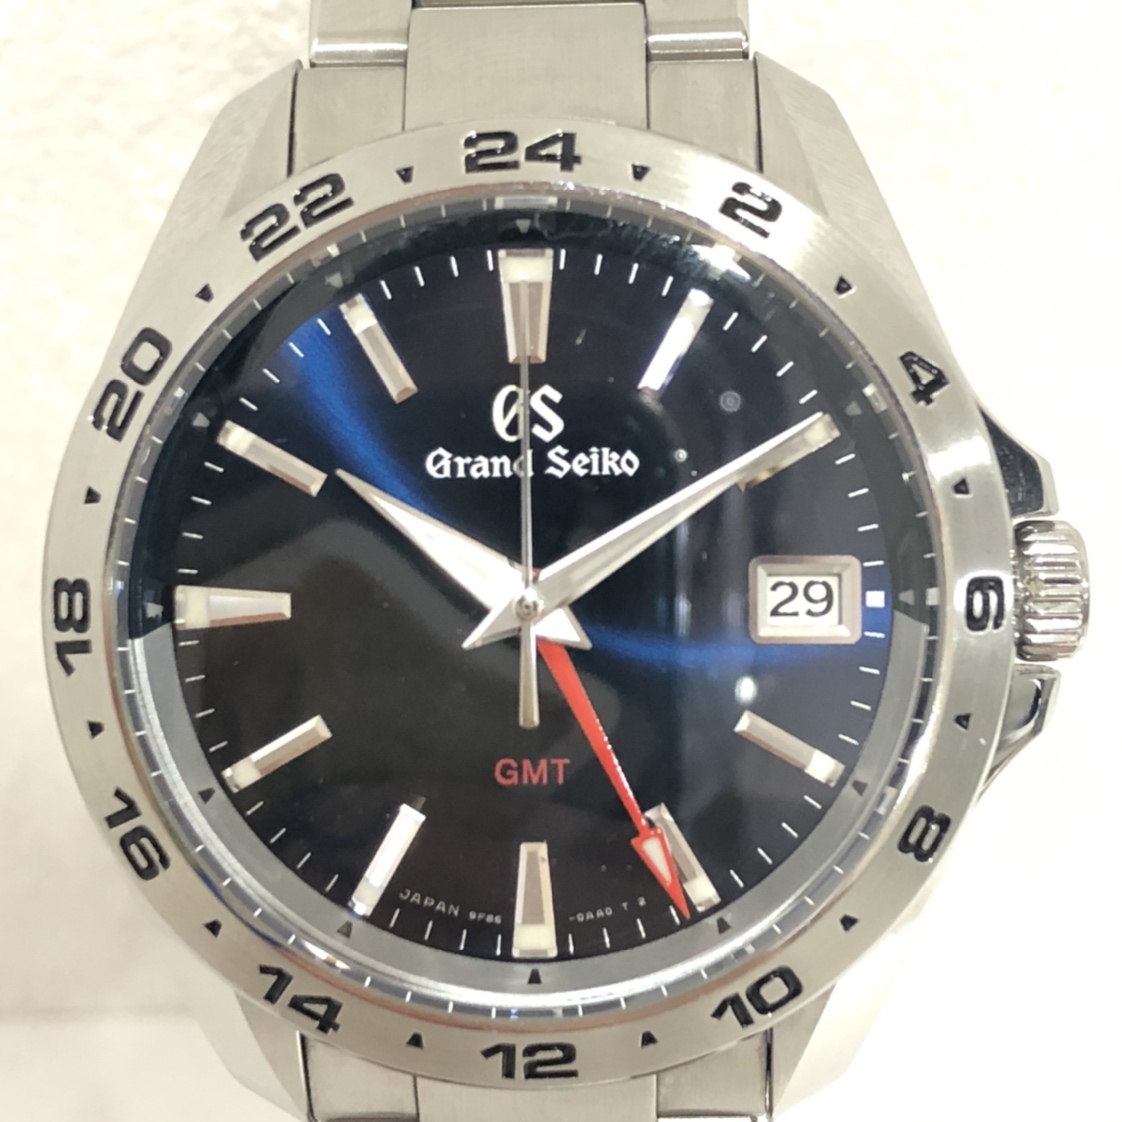 セイコーの9F86-0AB0 スポーツコレクション GMT クオーツ時計の買取実績です。